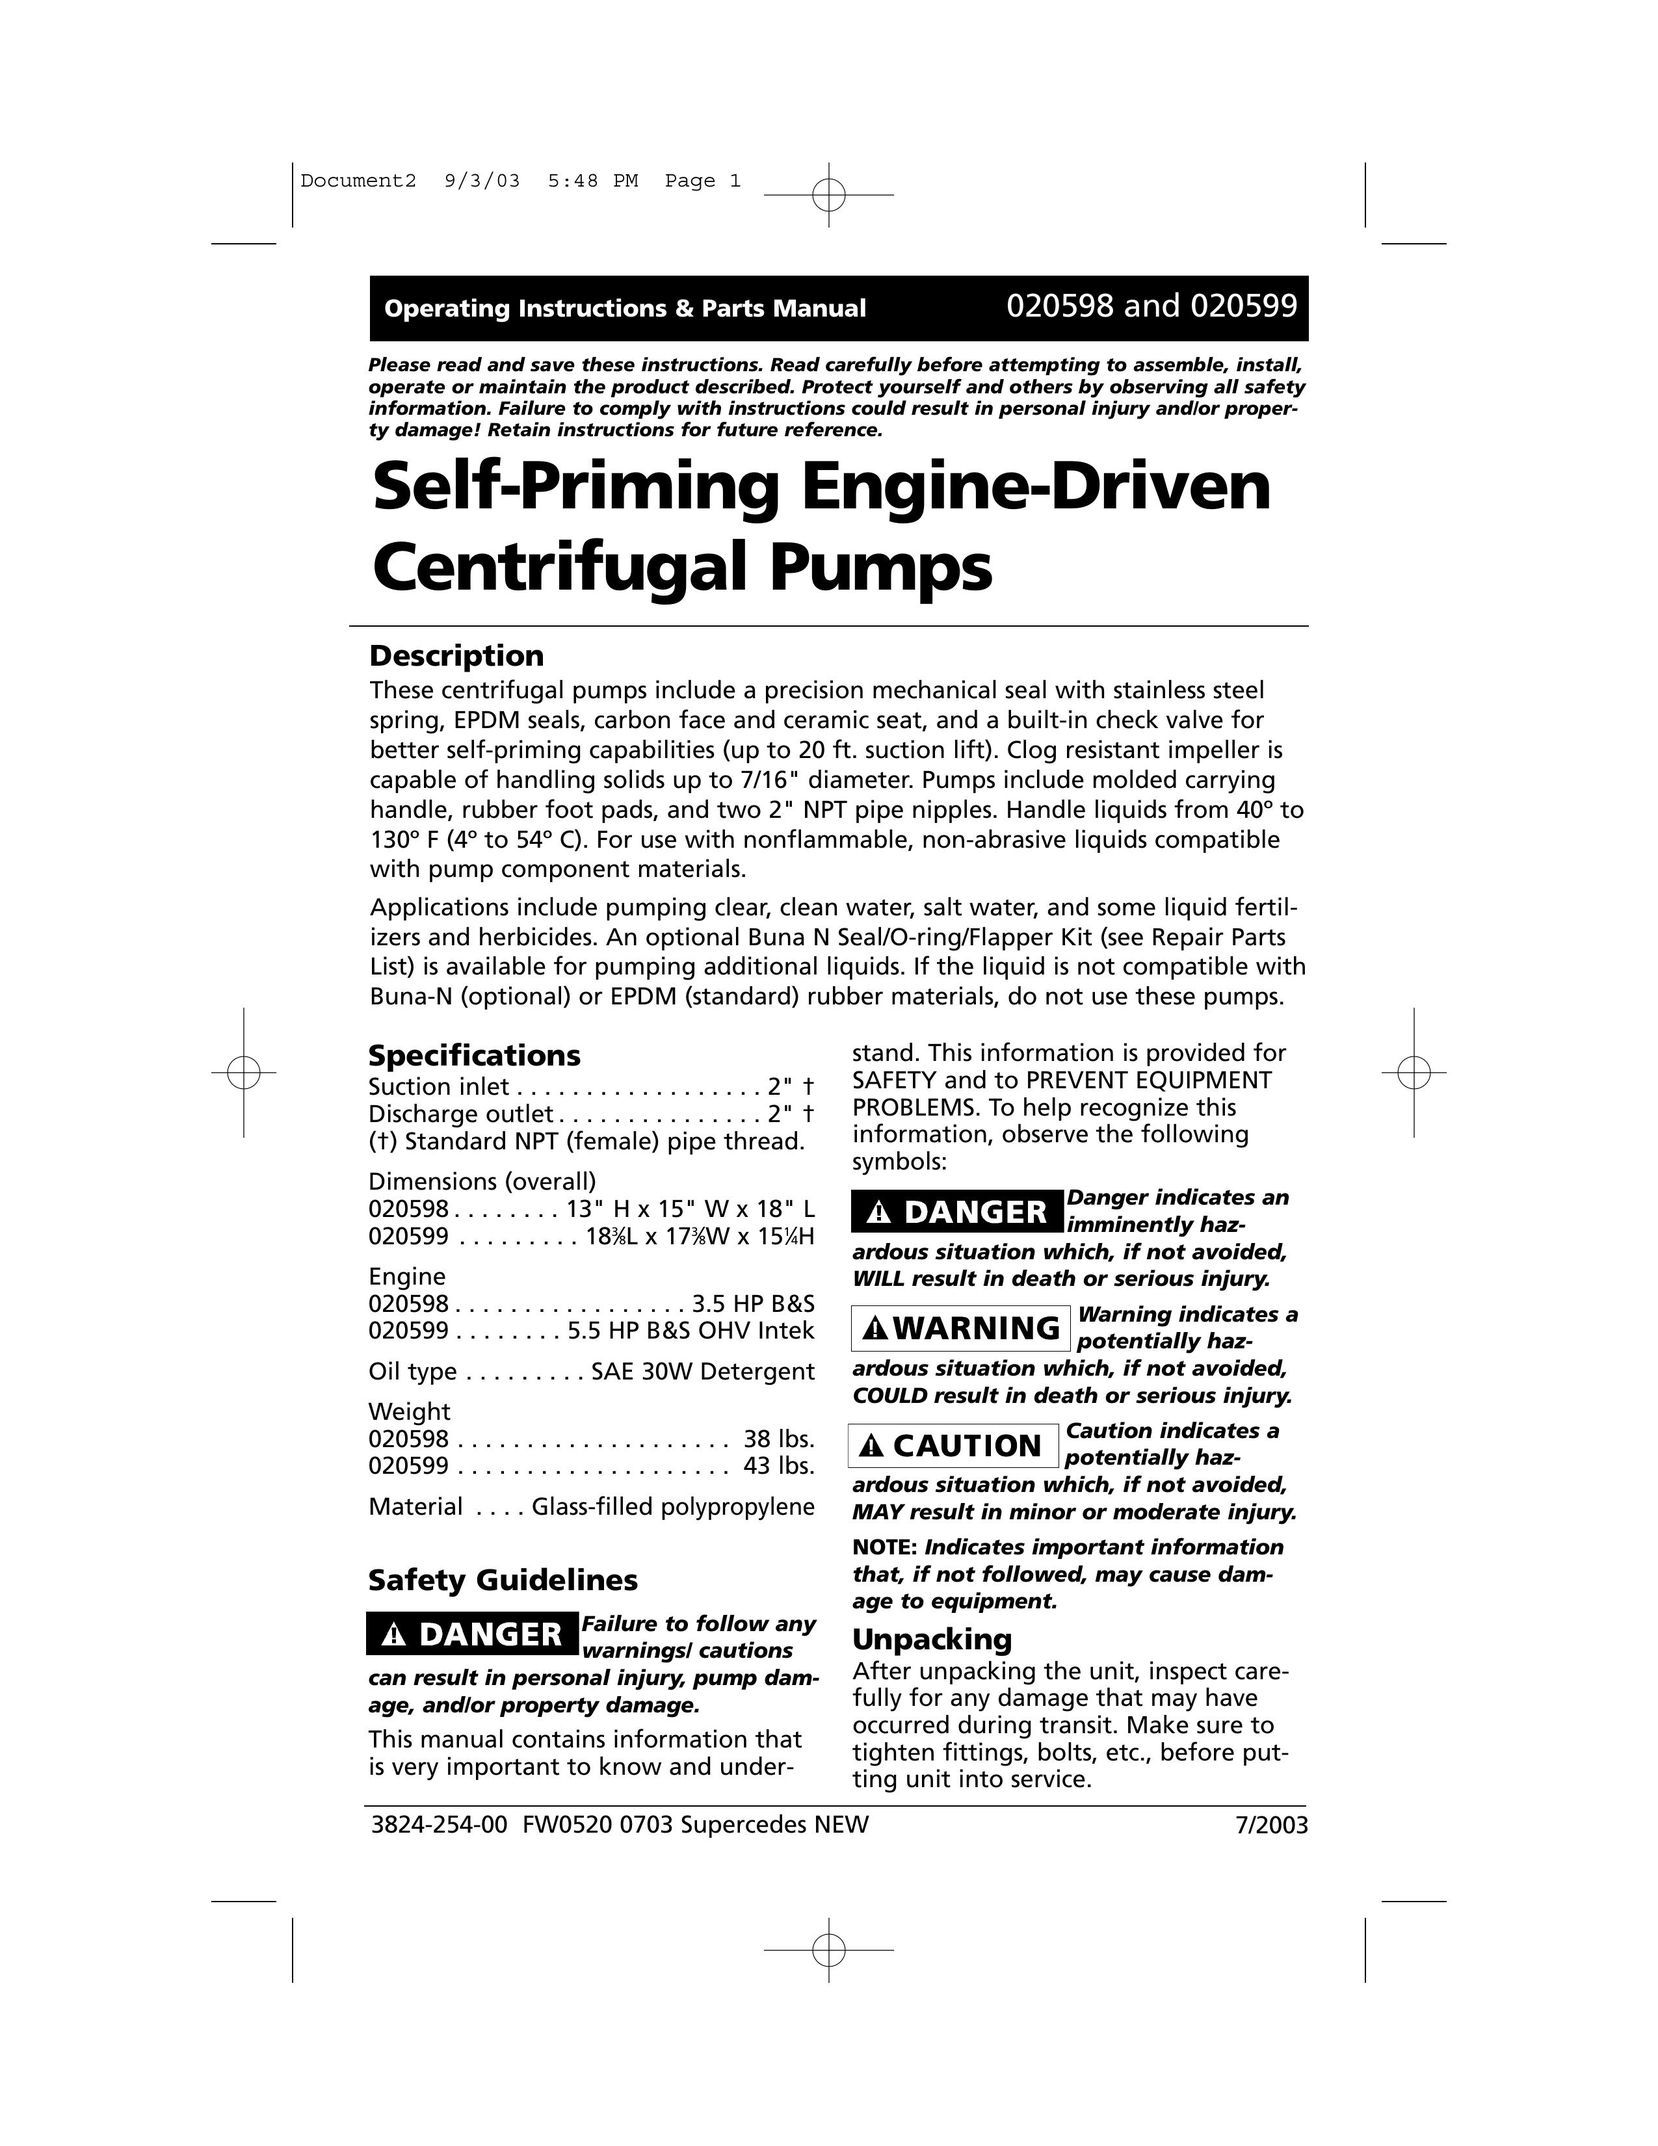 HP (Hewlett-Packard) 020599 Water Pump User Manual